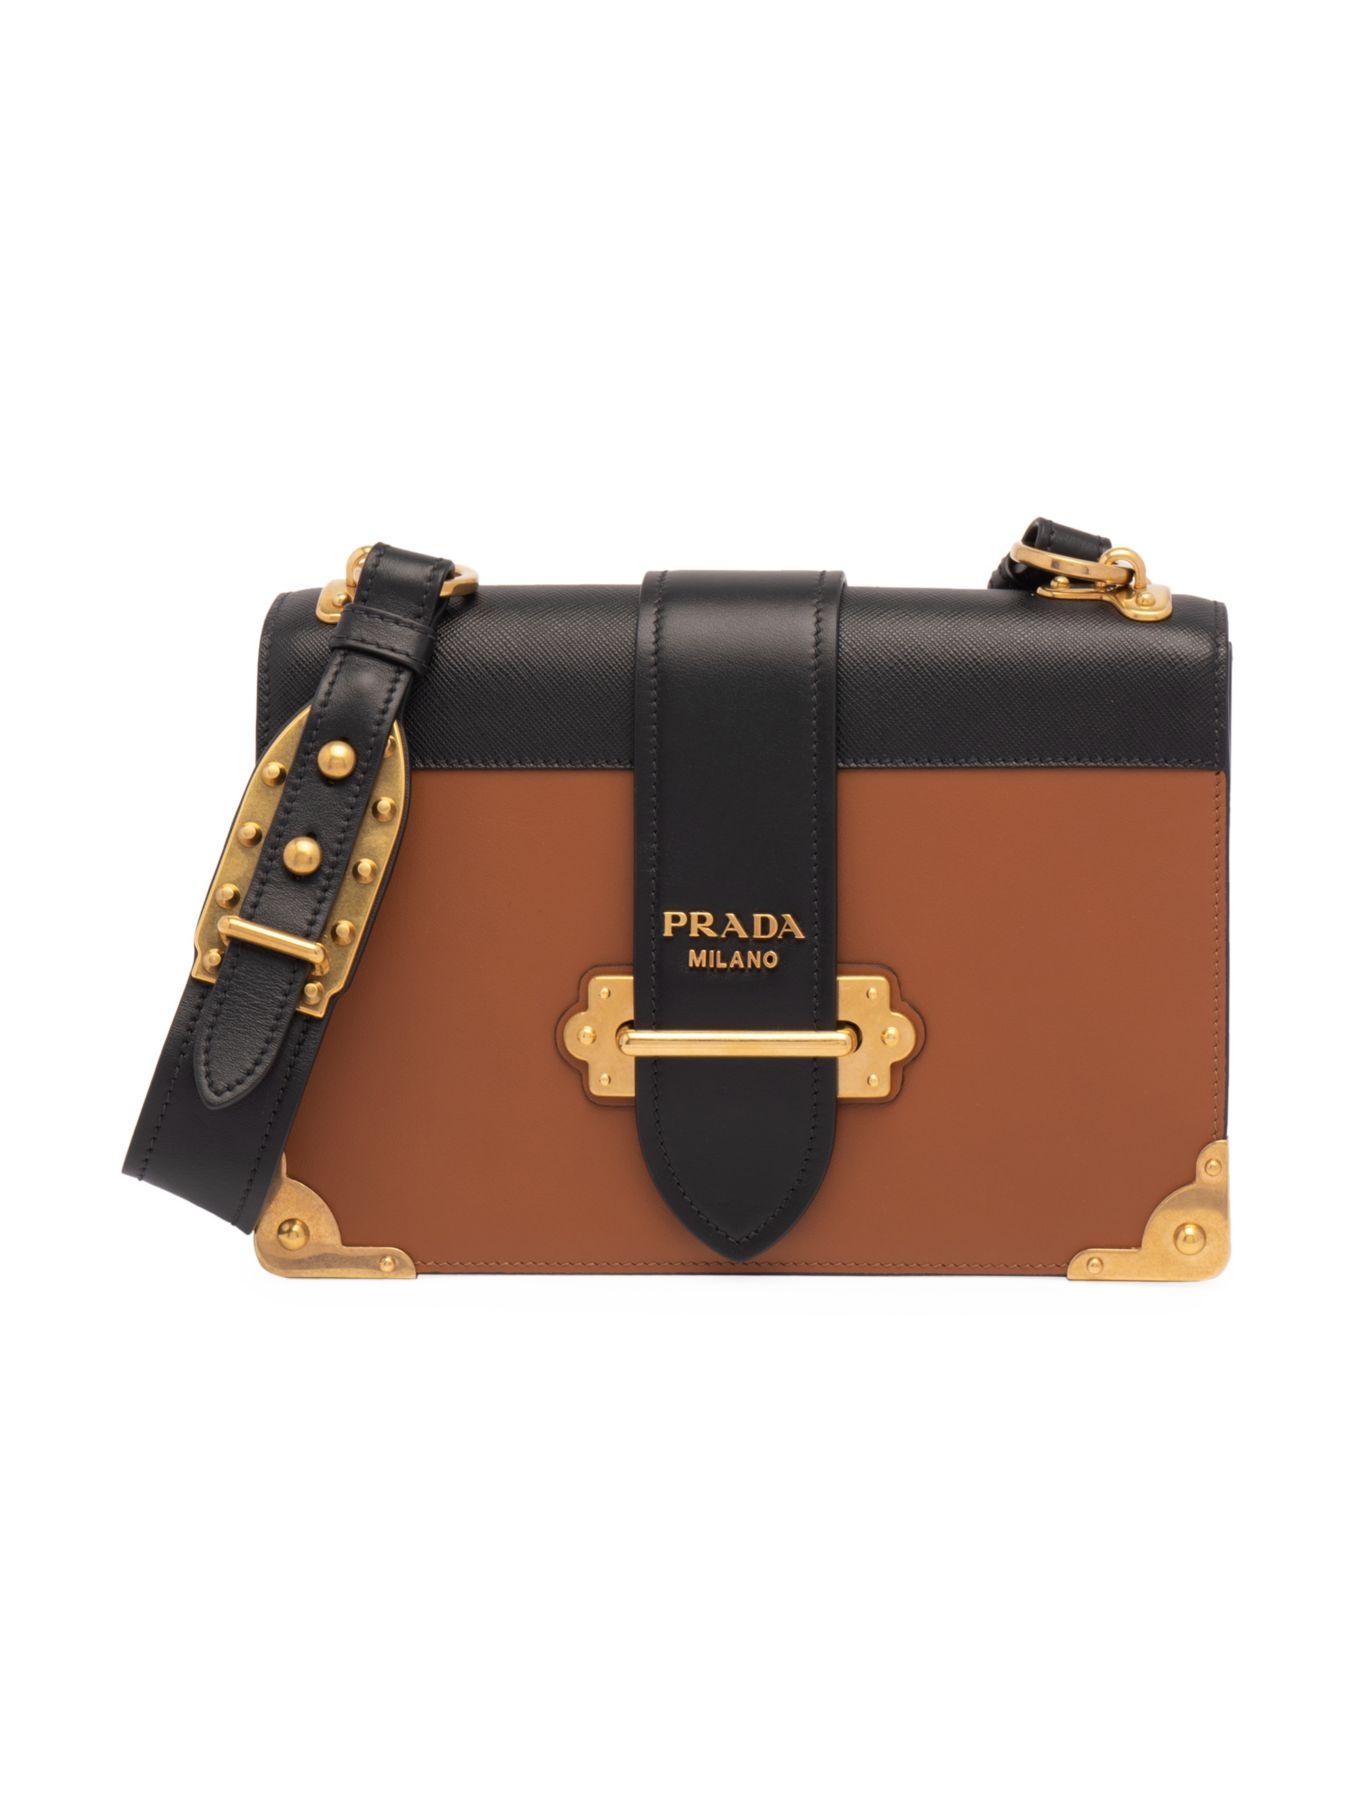 Prada Cahier Leather Shoulder Bag in Cognac (Brown) | Lyst